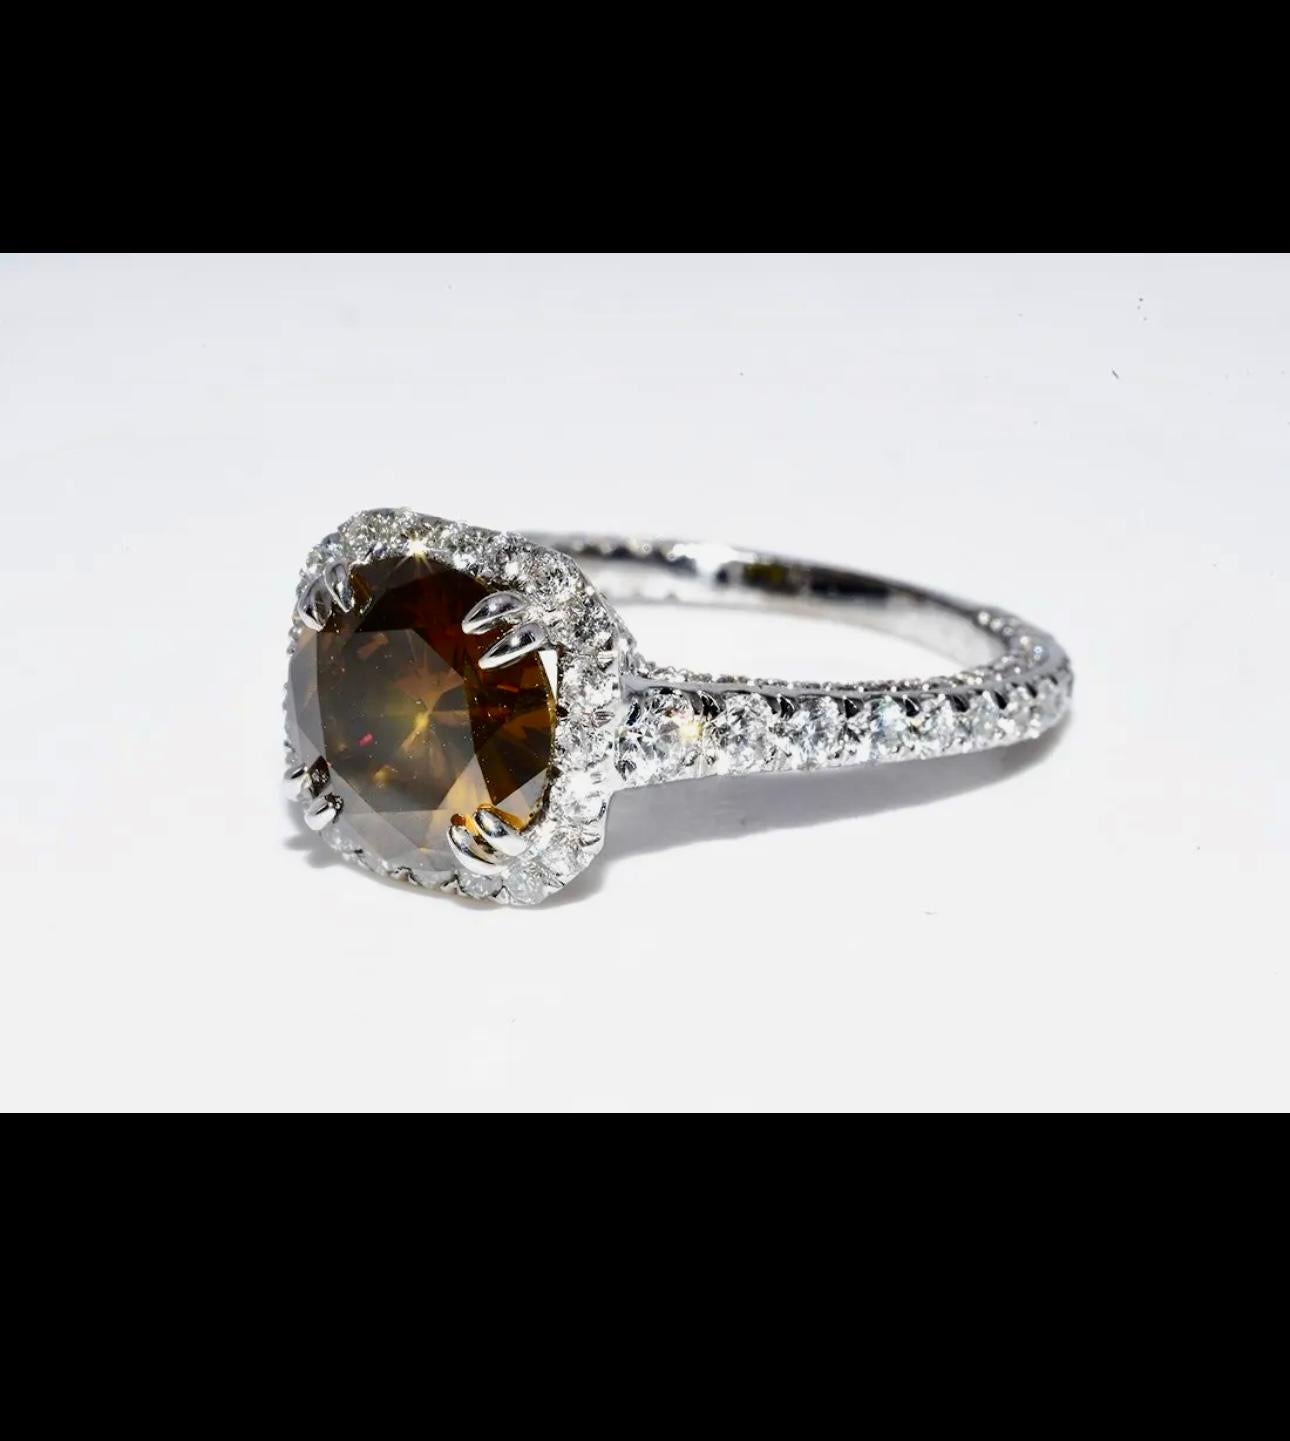 GIA zertifizierter Fancy Color Diamant: 1,92cts   
 
Farbe: Fancy Dark Orange-Brown  Sogar       
 
Natürliche Seite Brillant Rundschliff Weiß Diamanten: 1.00cts   
 
Art des Metalls: 14K Massiv Weißgold Ring
Gramm Gewicht: 3,8 Gramm
Ringgröße: